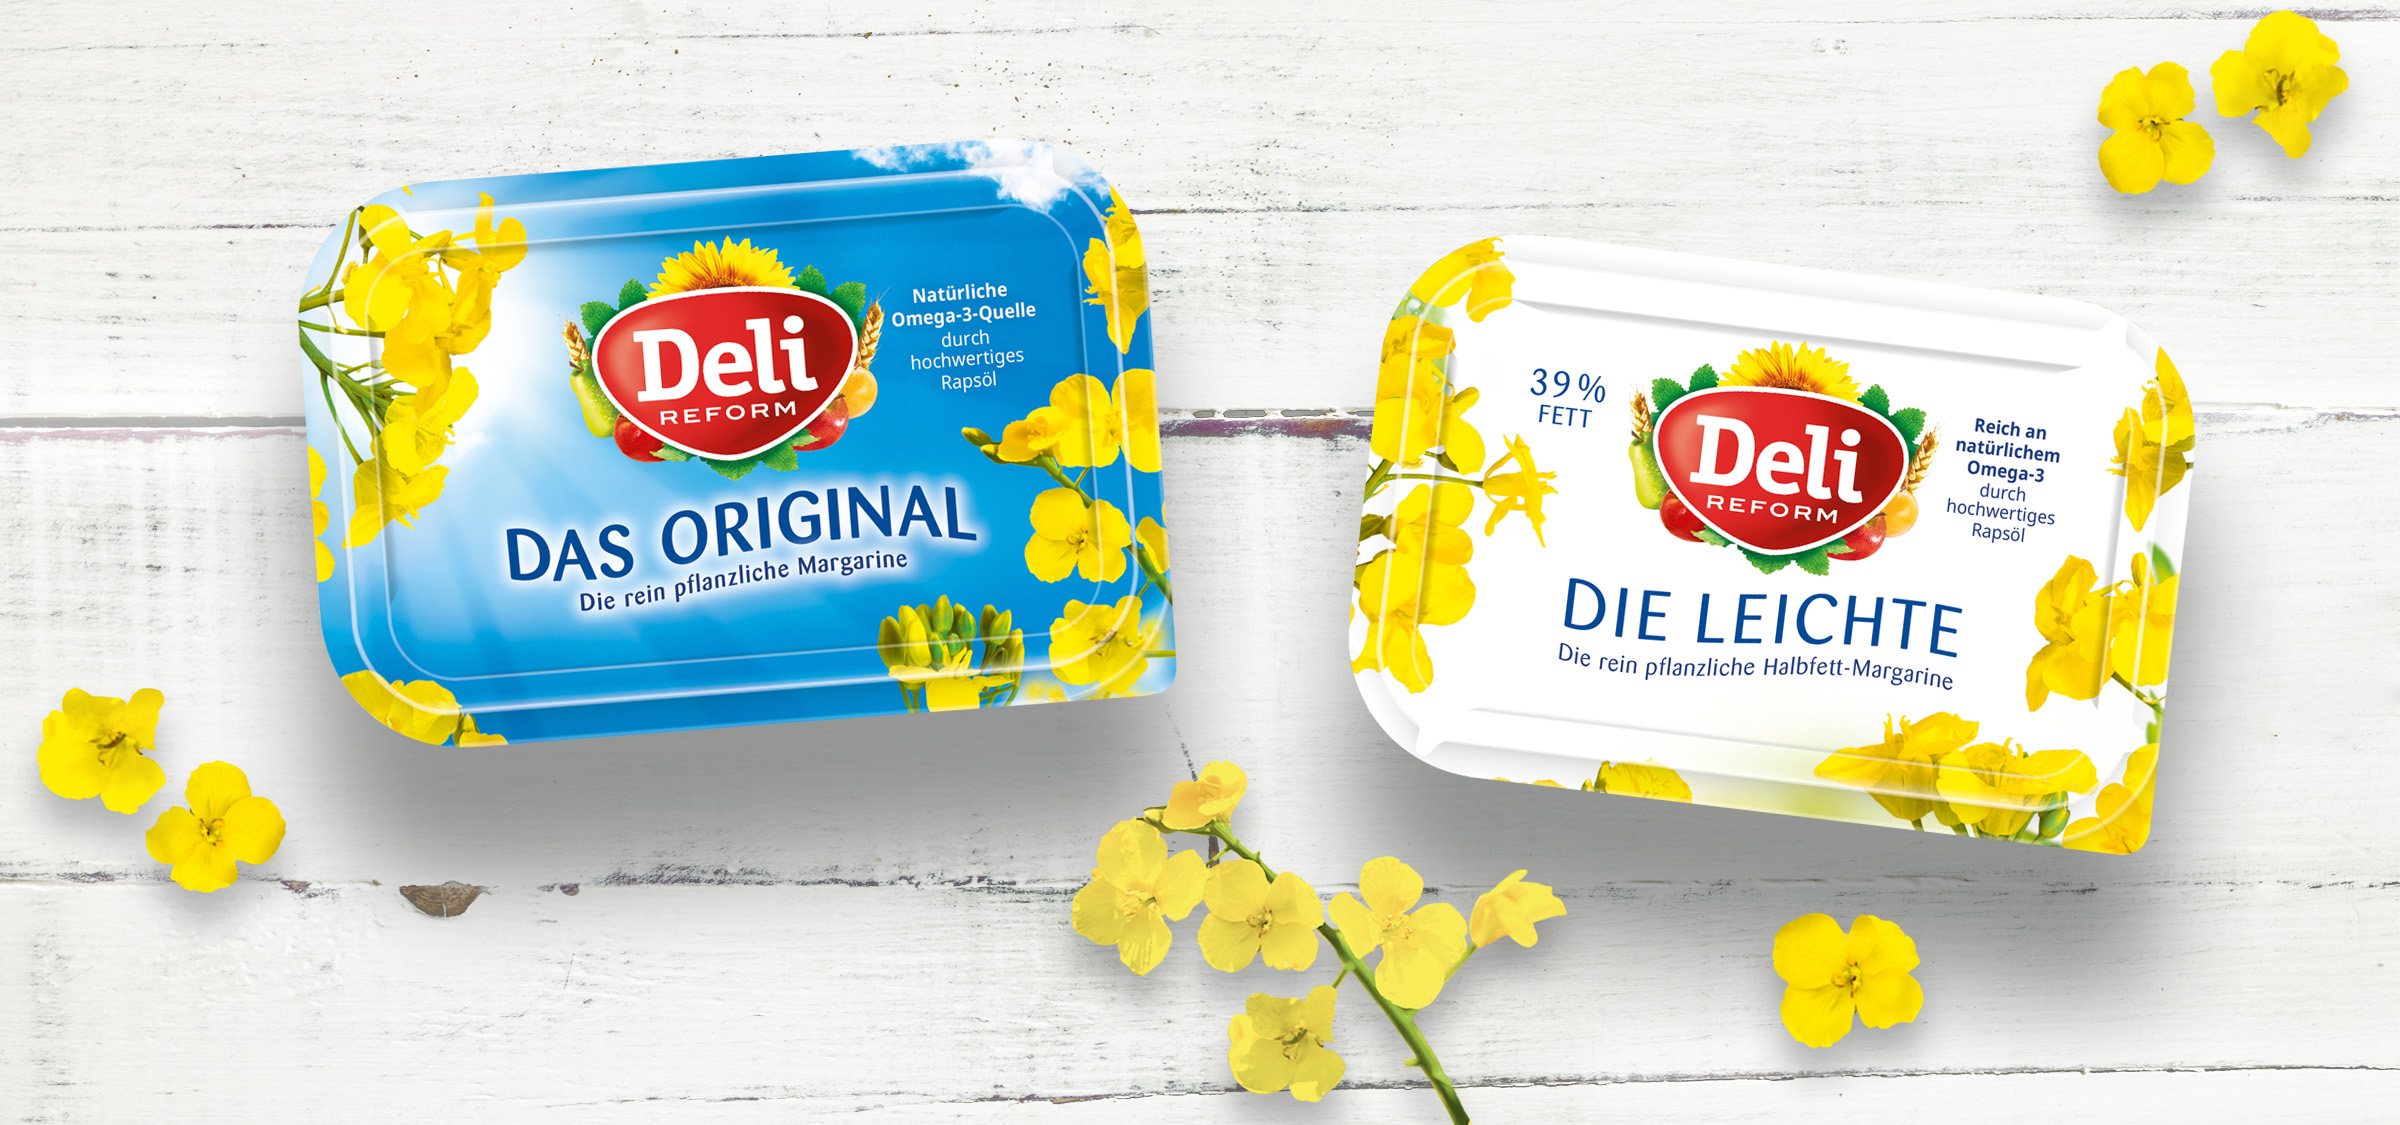 Deli Reform Margarine - Packaging und Promotions von adworx